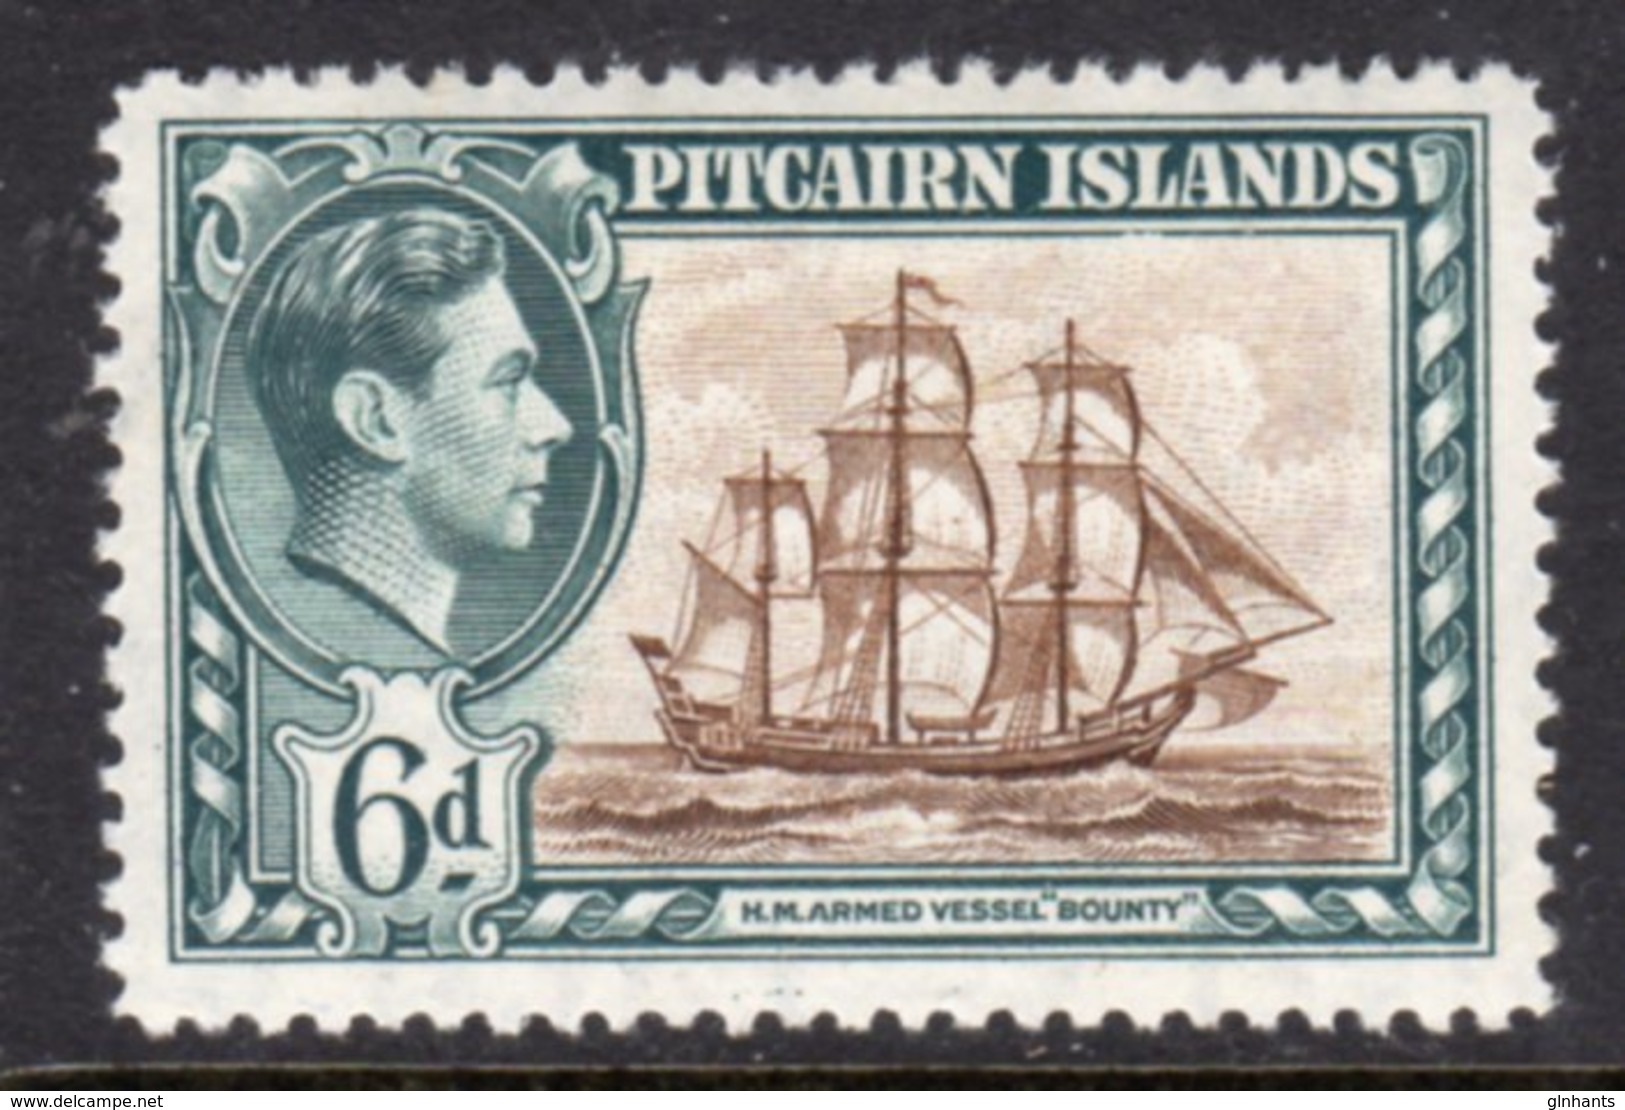 PITCAIRN ISLANDS - 1940 1 6d KGVI SHIP STAMP FINE MINT LMM * SG6 - Pitcairn Islands